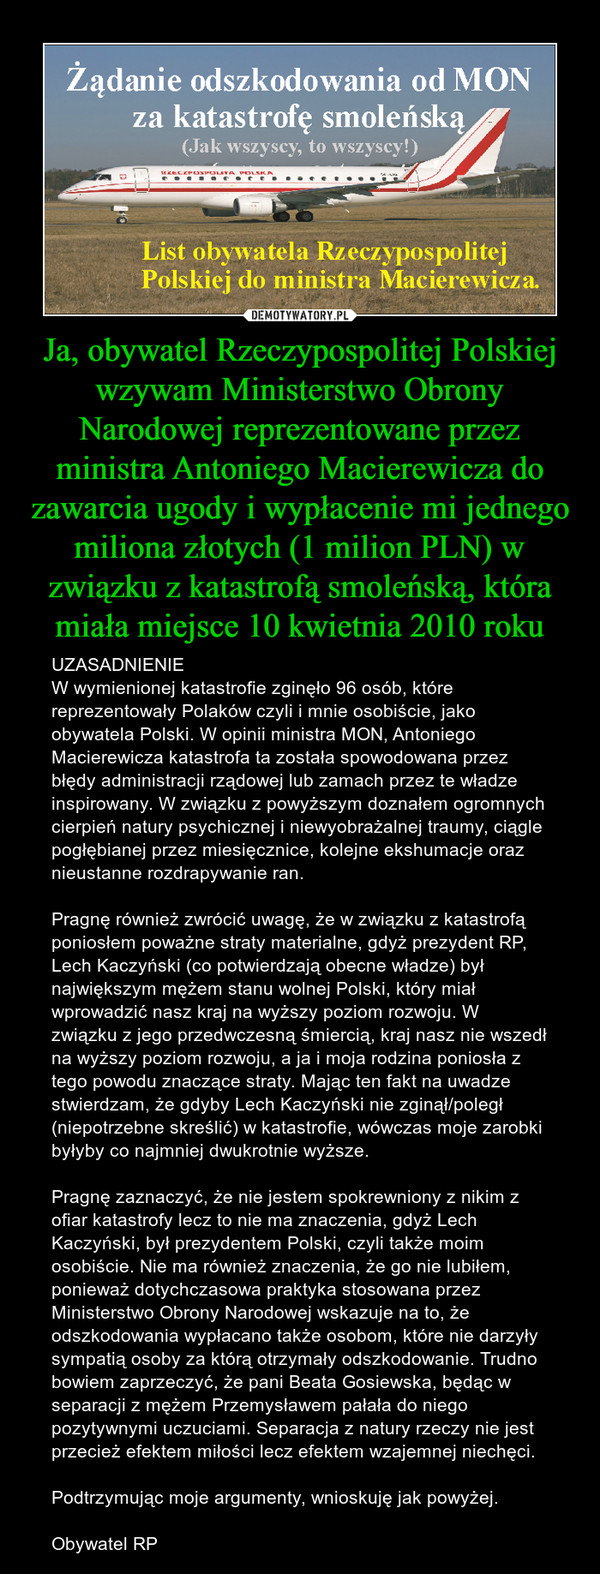 Ja, obywatel Rzeczypospolitej Polskiej wzywam Ministerstwo Obrony Narodowej reprezentowane przez ministra Antoniego Macierewicza do zawarcia ugody i wypłacenie mi jednego miliona złotych (1 milion PLN) w związku z katastrofą smoleńską, która miała miejsce